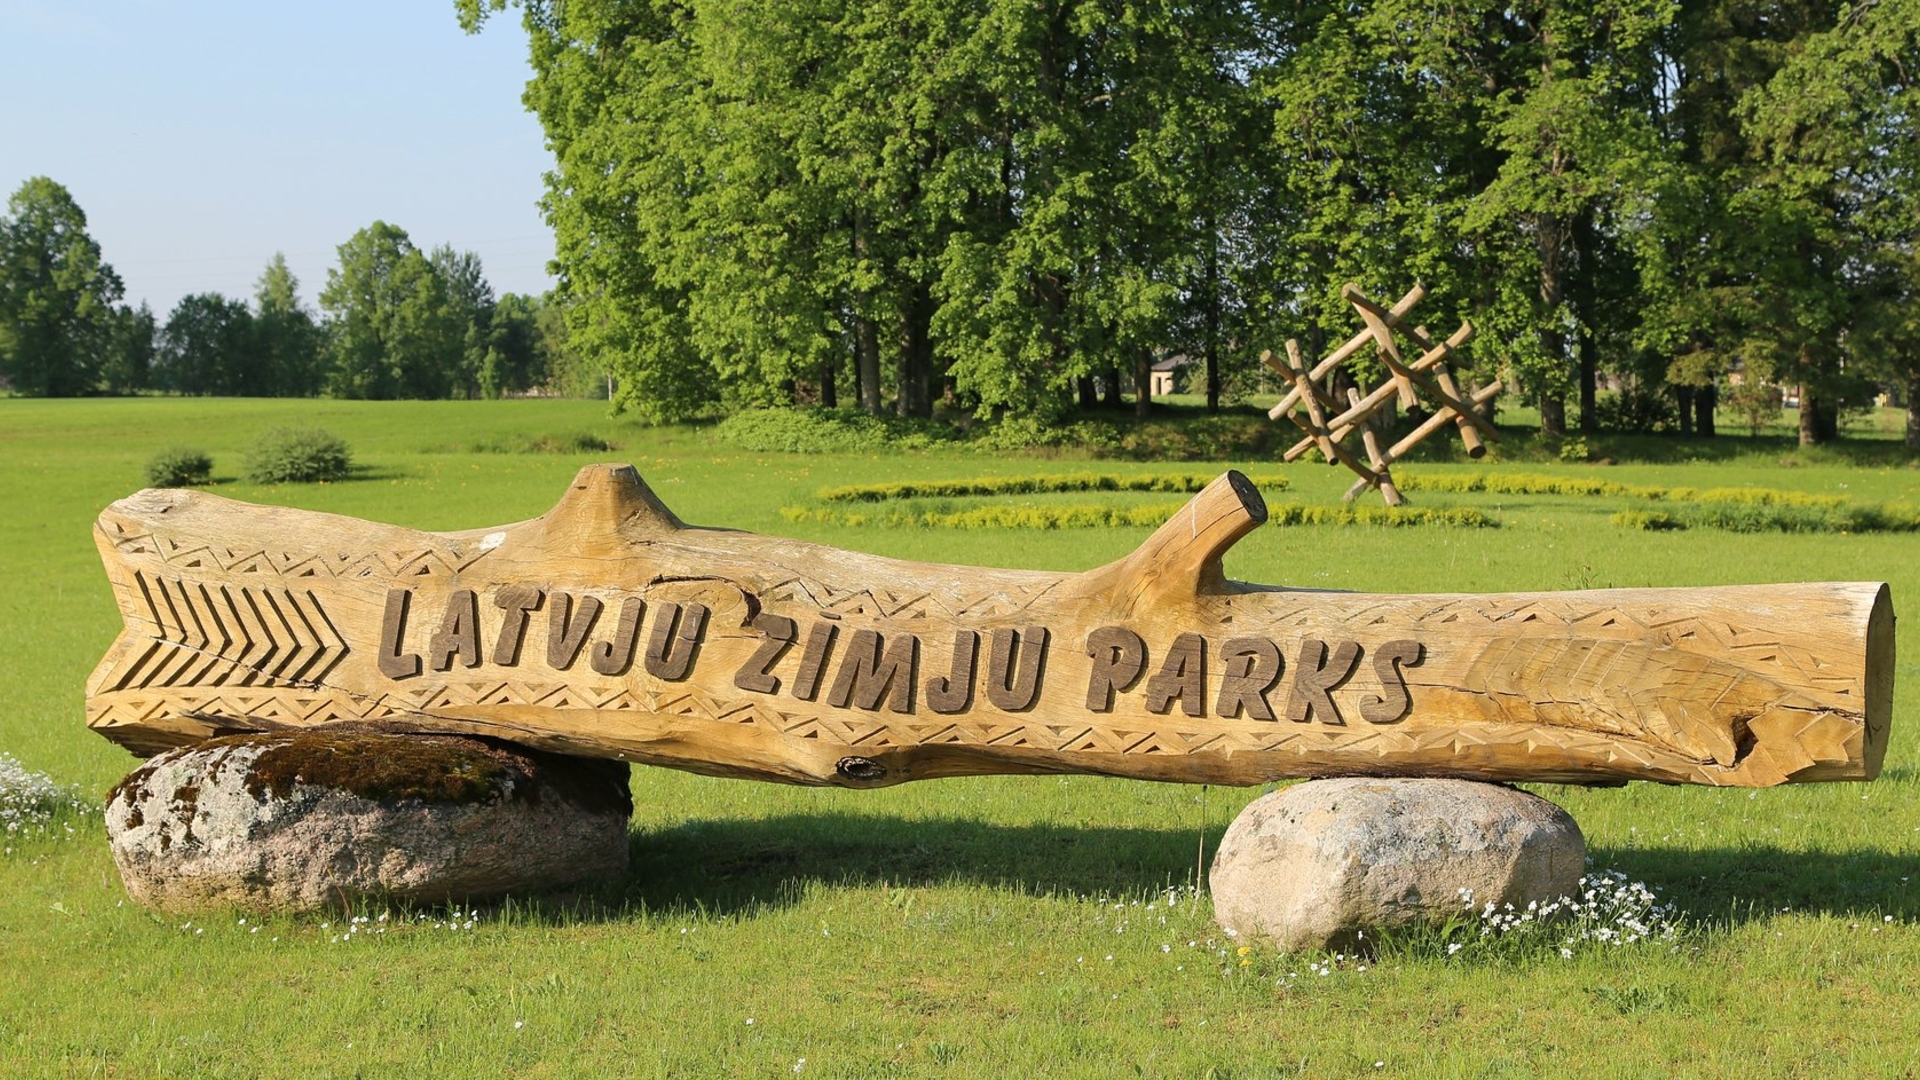 Latviškų simbolių parkas